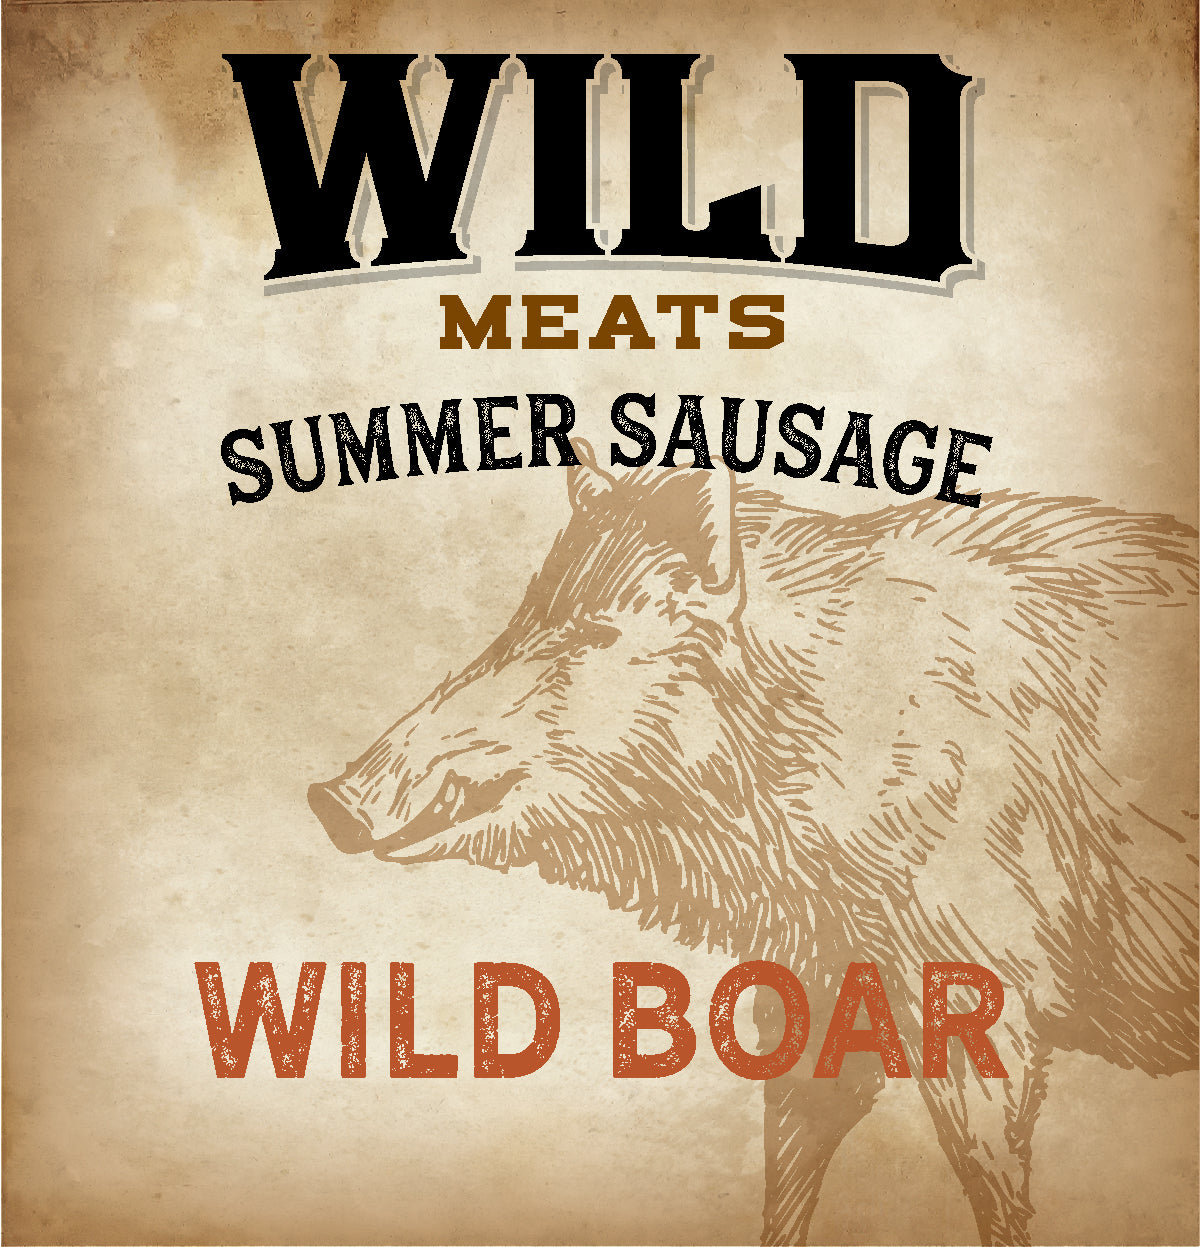 Summer Sausage - Wild Boar